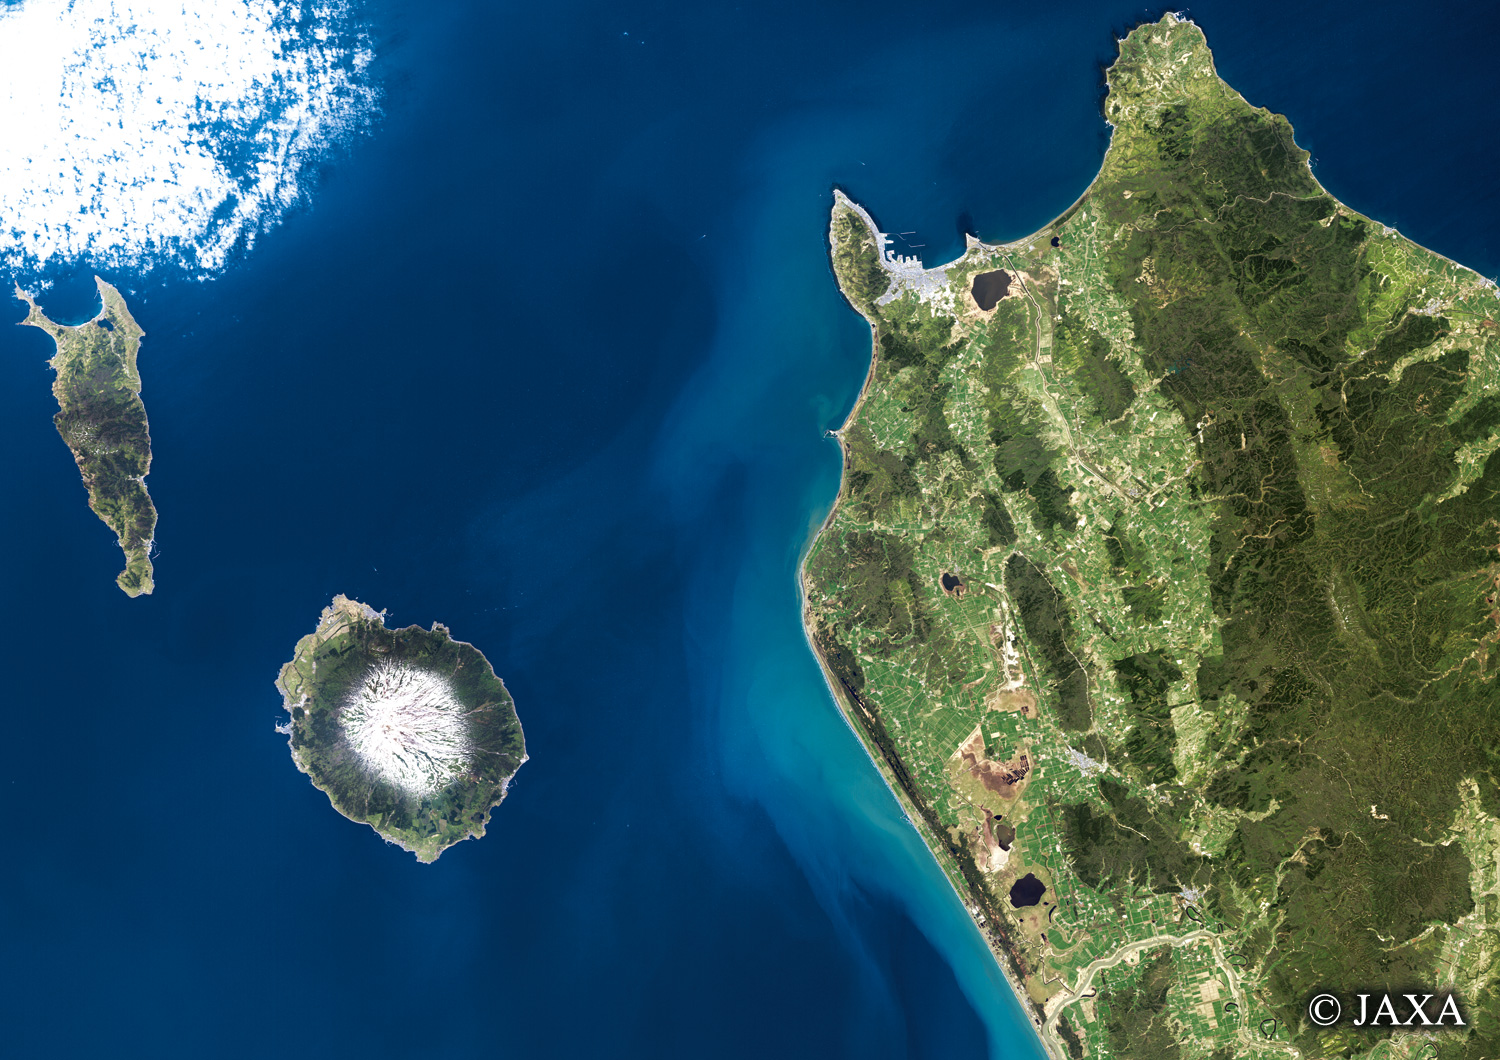 だいちから見た日本の都市 礼文島・利尻島・稚内:衛星画像